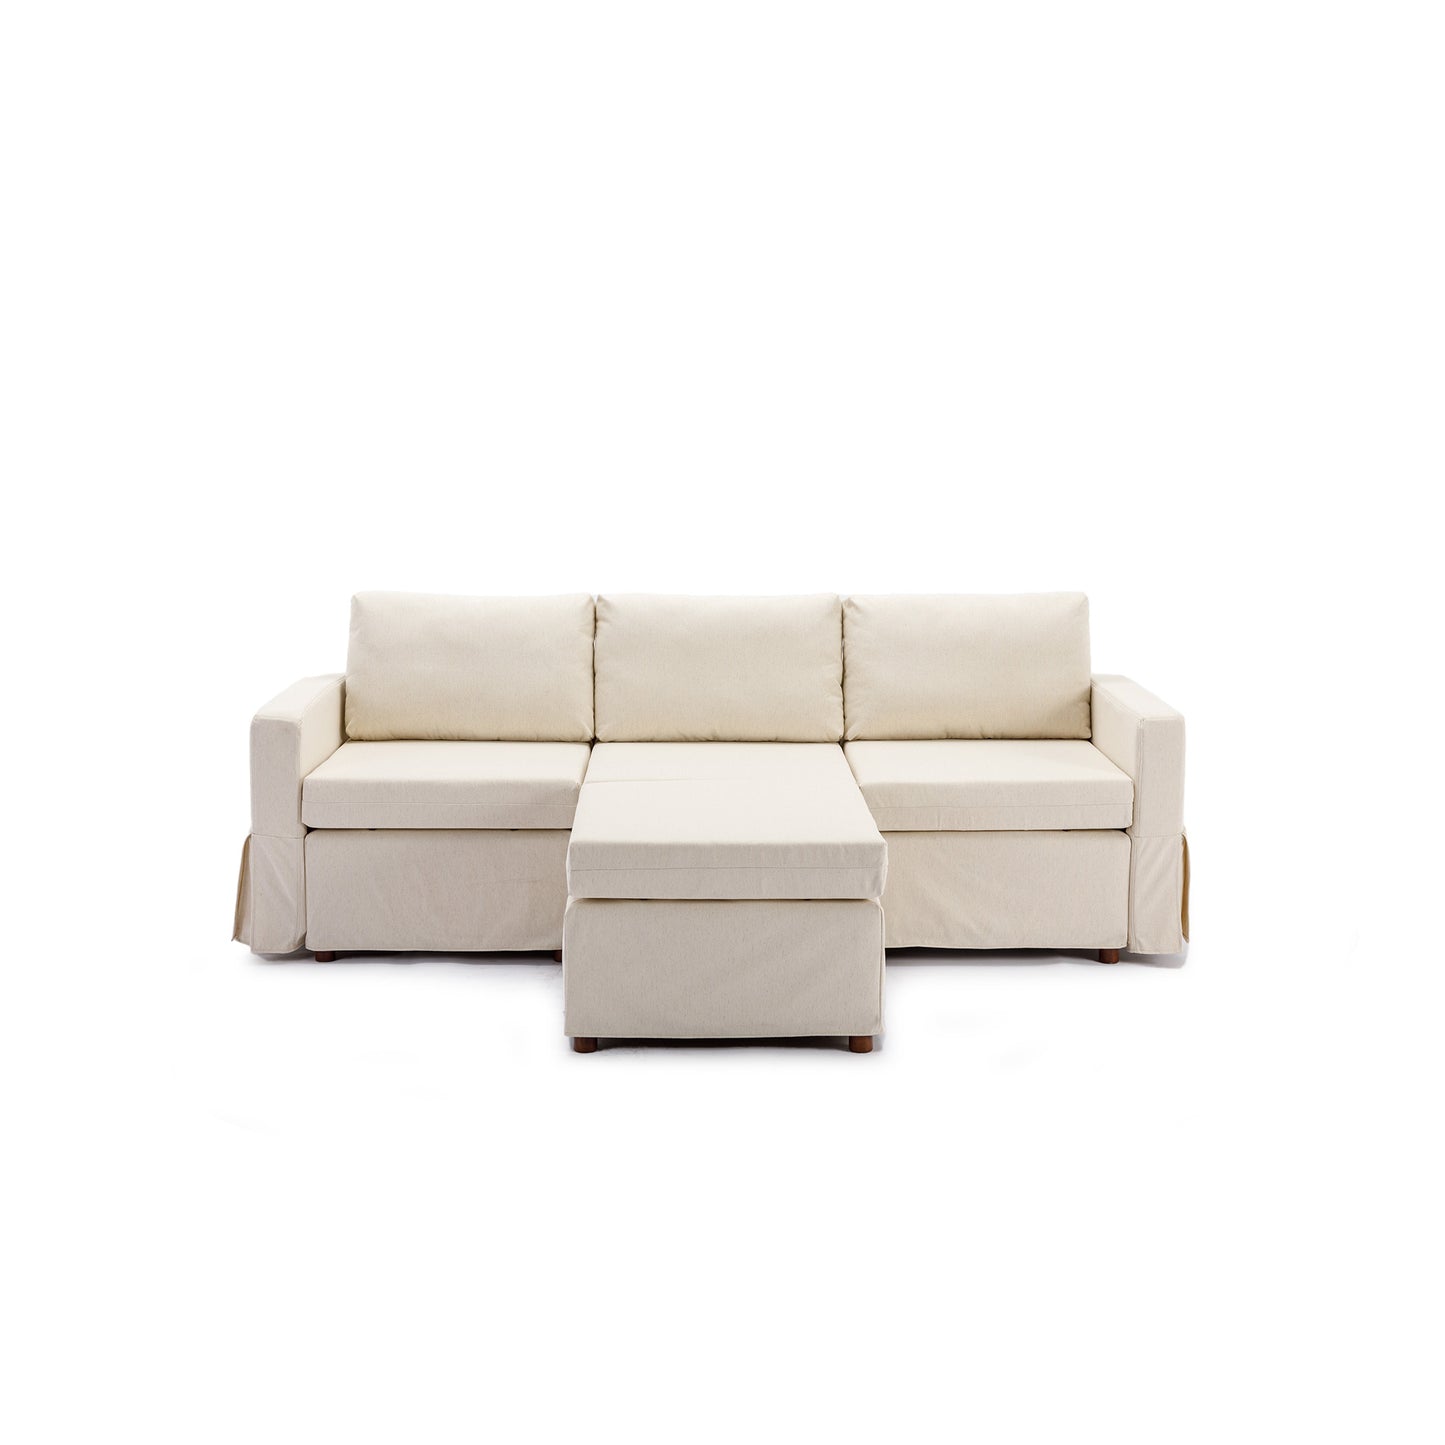 3 Seat Module Sectional Sofa in Cream w/ Ottoman